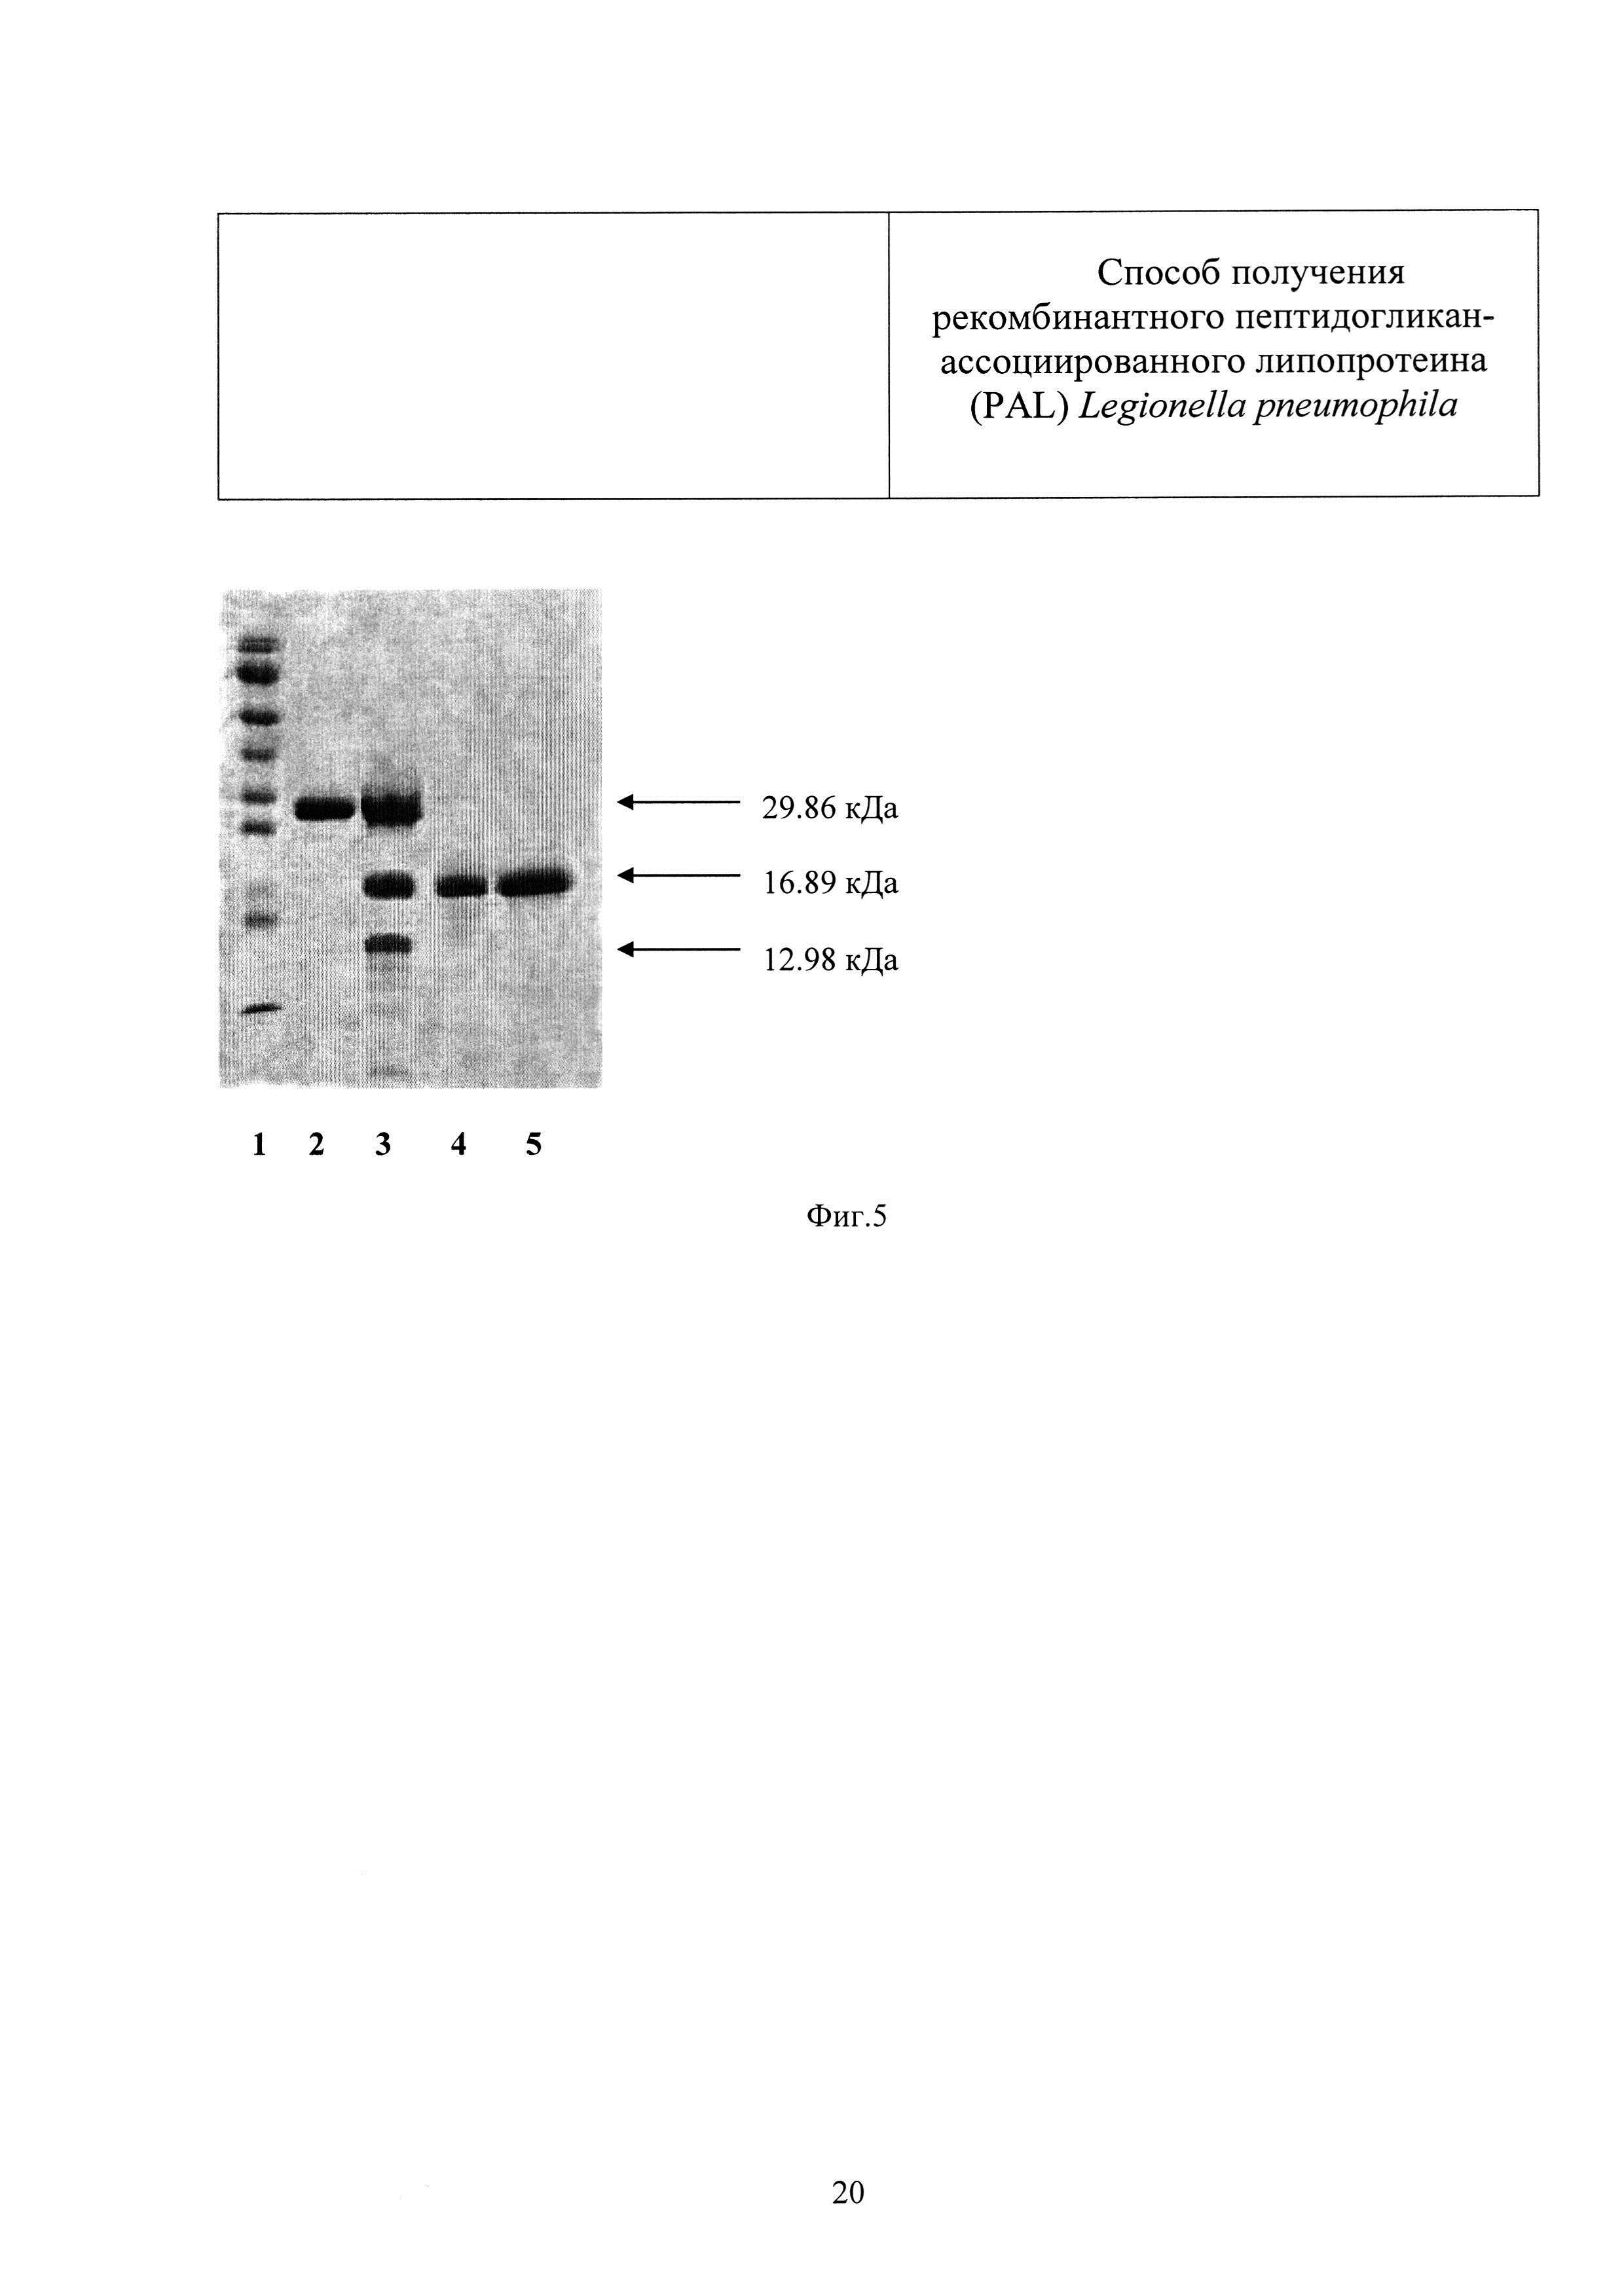 Способ получения рекомбинантного пептидогликан-ассоциированного липопротеина (PAL) Legionella pneumophila